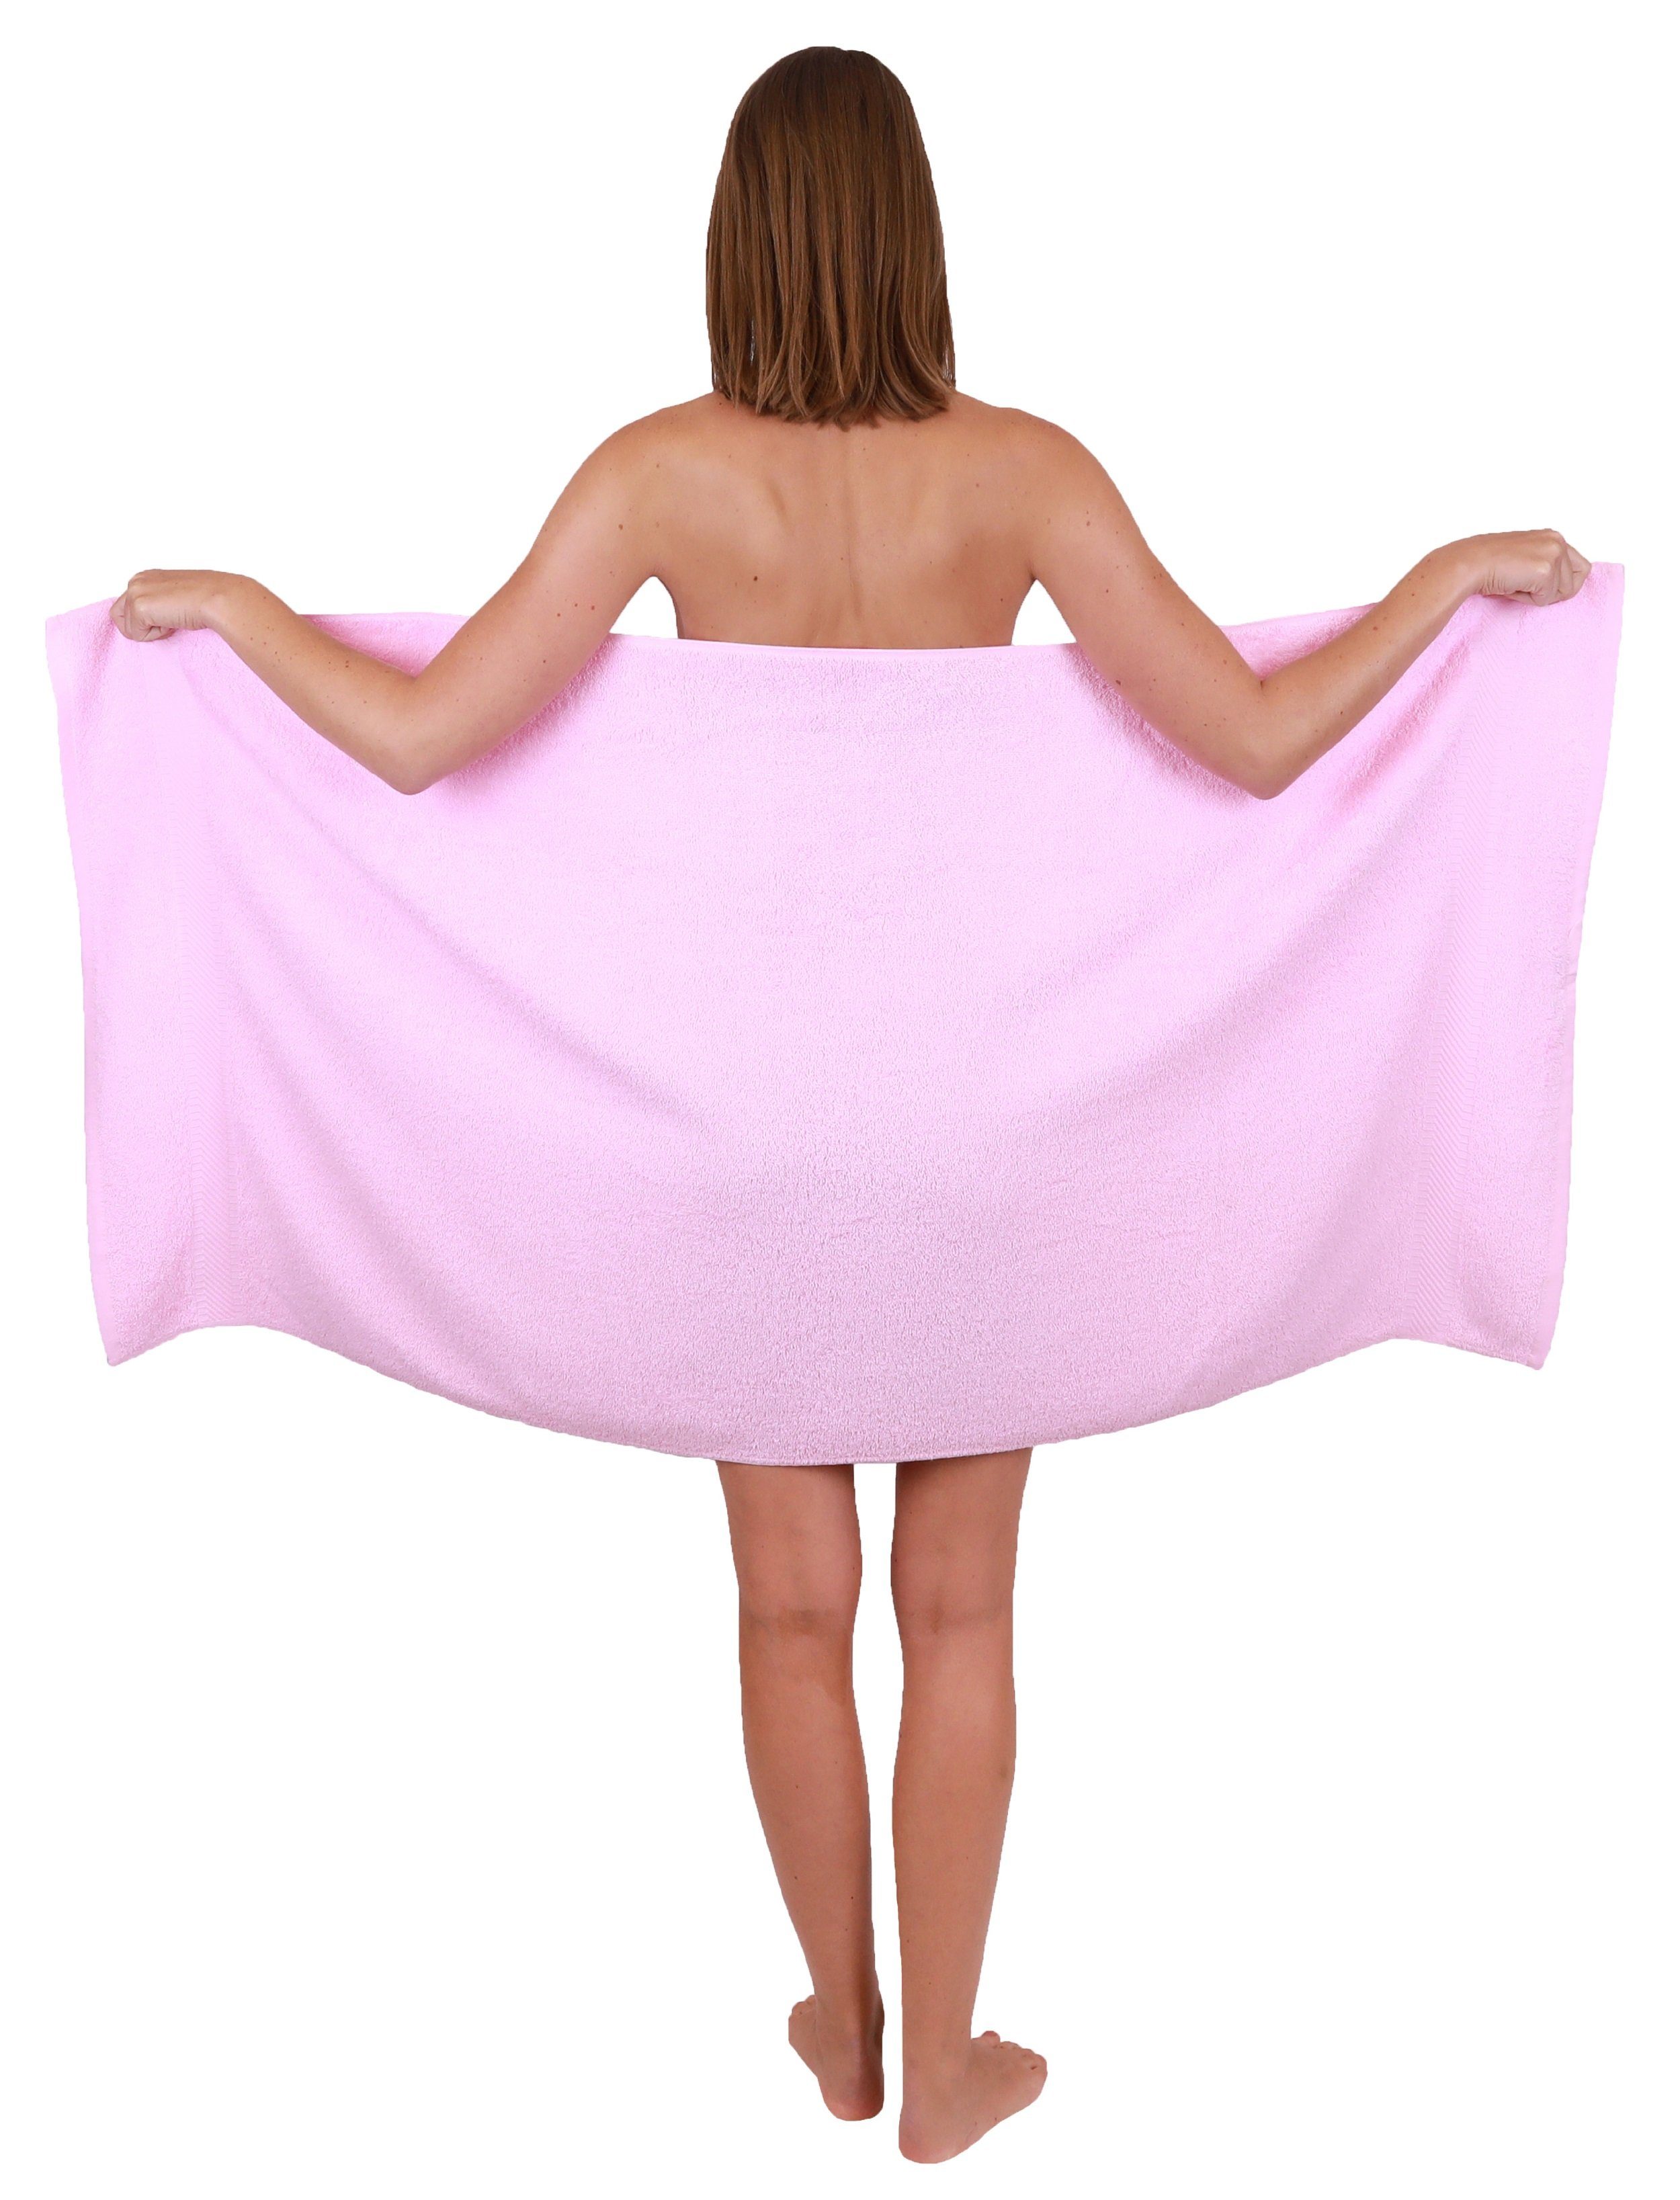 Betz Handtuch-Set Set 100% rosé, 8-tlg. Farbe und weiß Baumwolle Palermo Handtuch